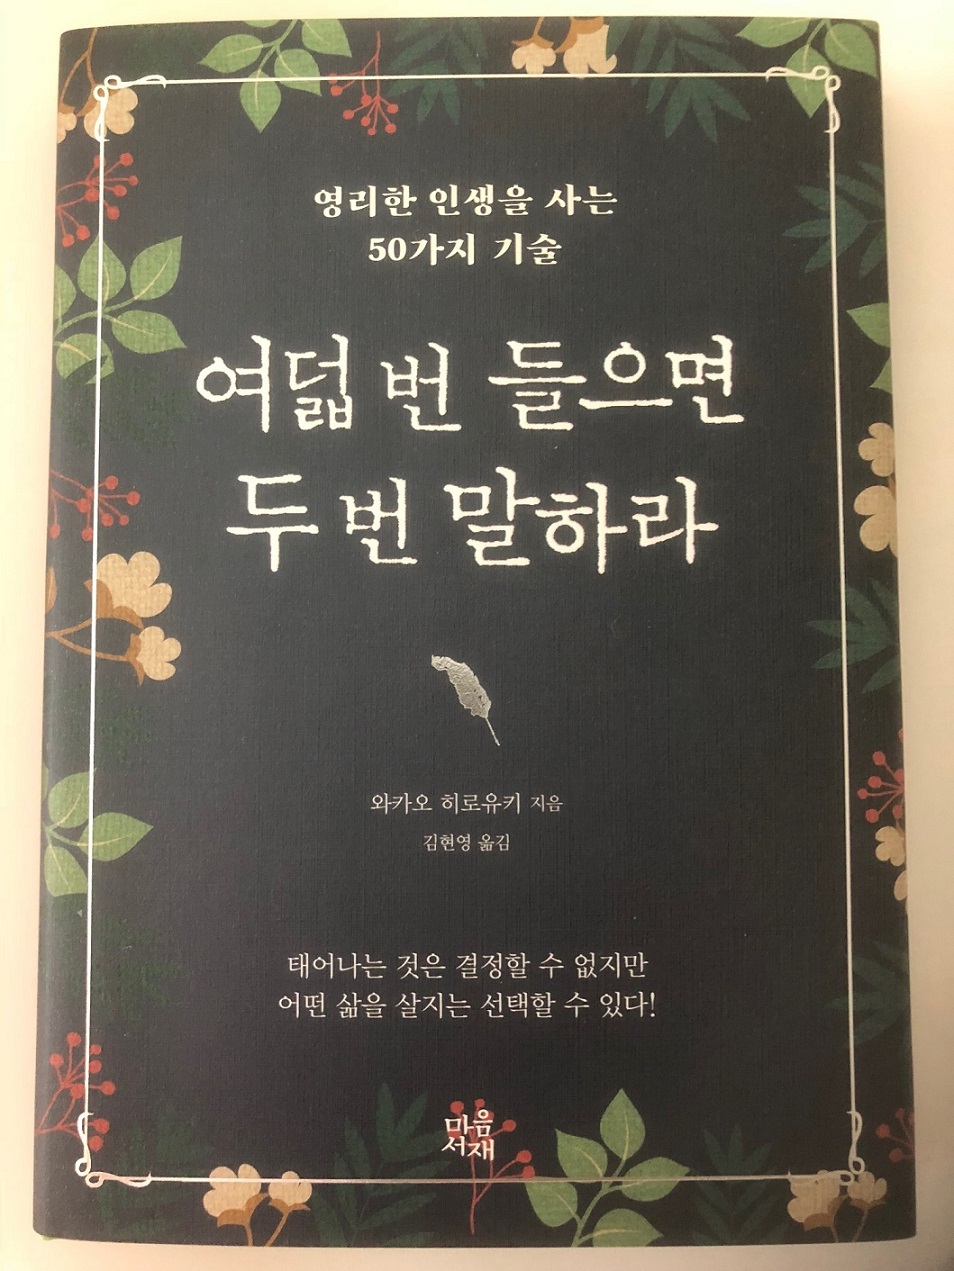 若尾裕之の著書『幸せは心のなかで、あなたの気づきを待っている』（PHP研究所）が韓国でも発売